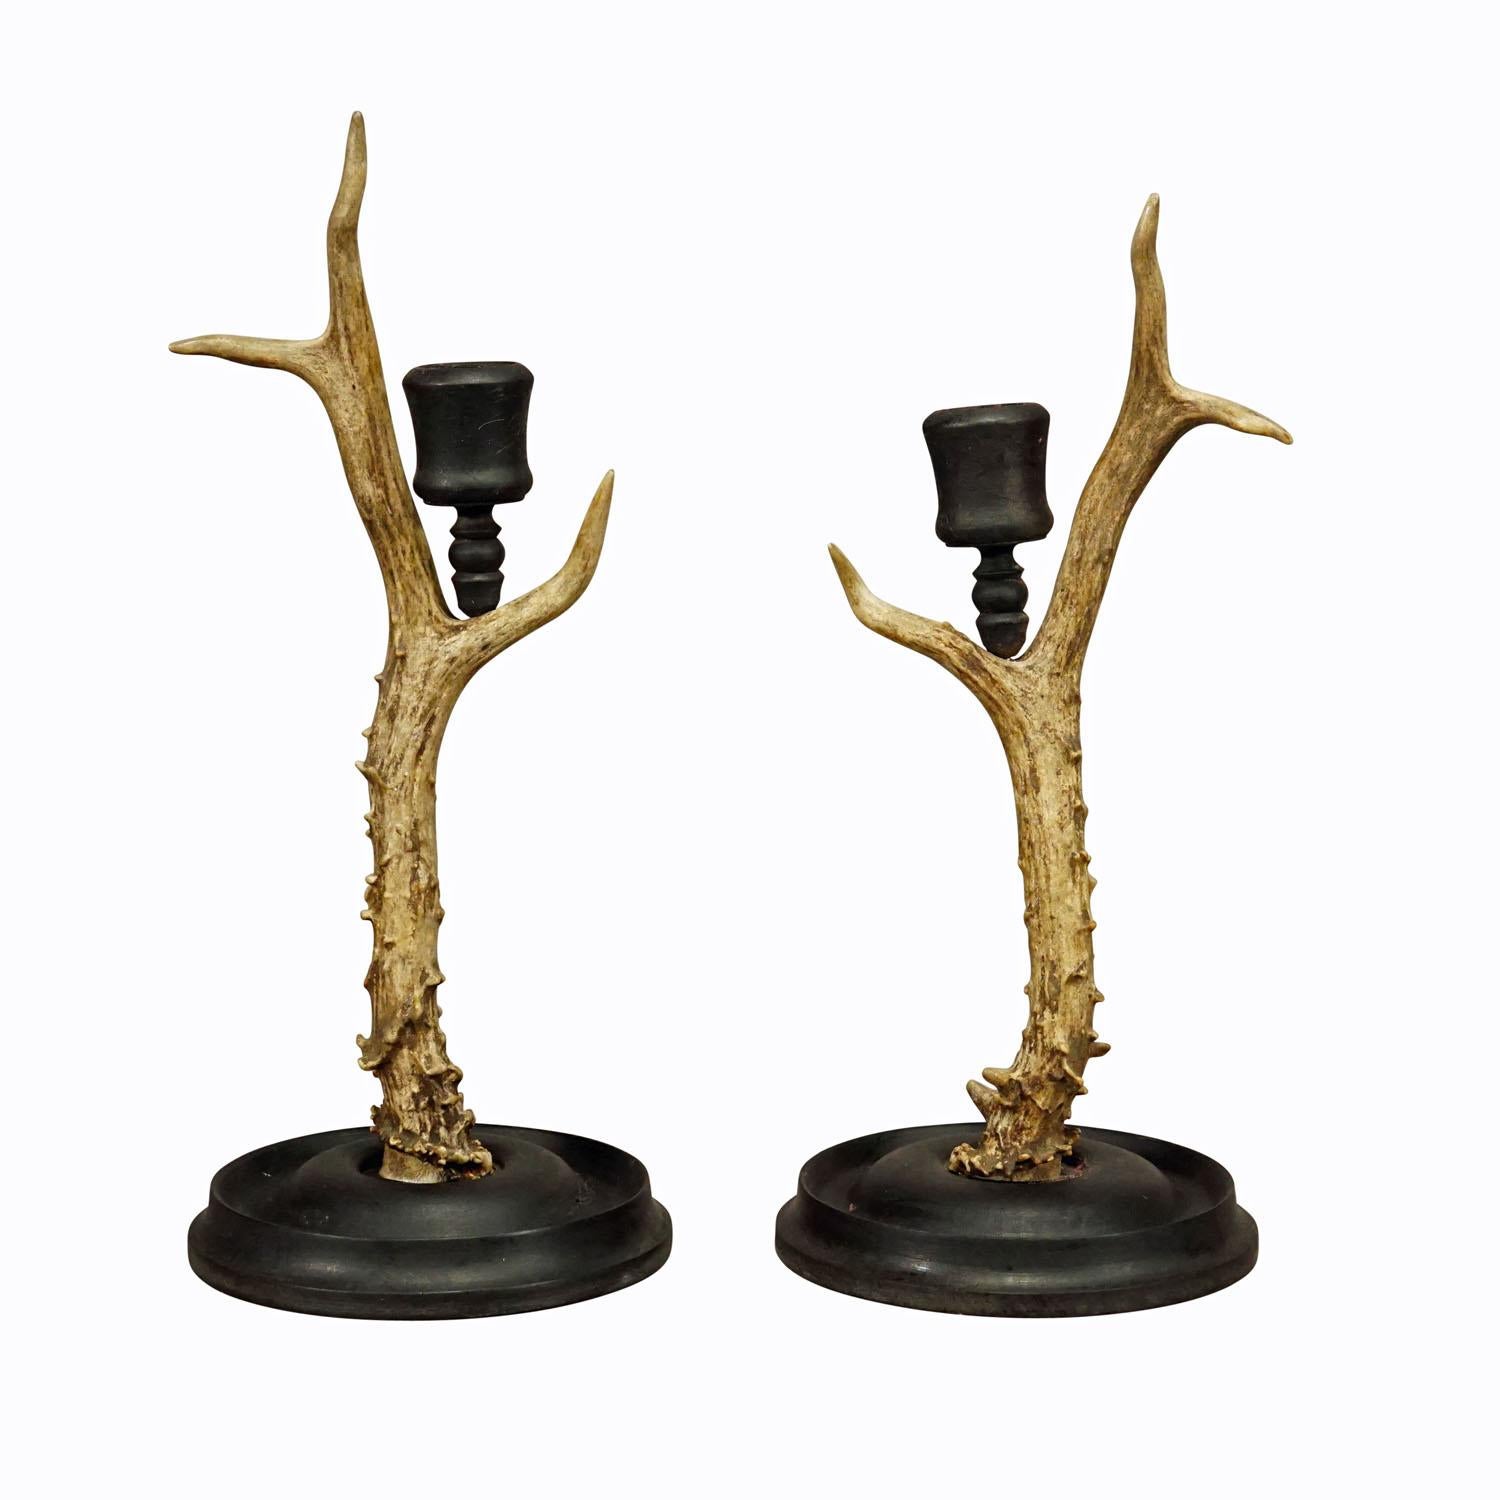 Ein Paar Schwarzwälder Kerzenständer mit Holzsockel und Ausguss, Deutschland ca. 1930er Jahre

Das Paar Schwarzwälder Kerzenhalter besteht aus einem gedrechselten Holzsockel und einer Tülle. Jedes Stück ist aus einem originalen Hirschhorn gefertigt.